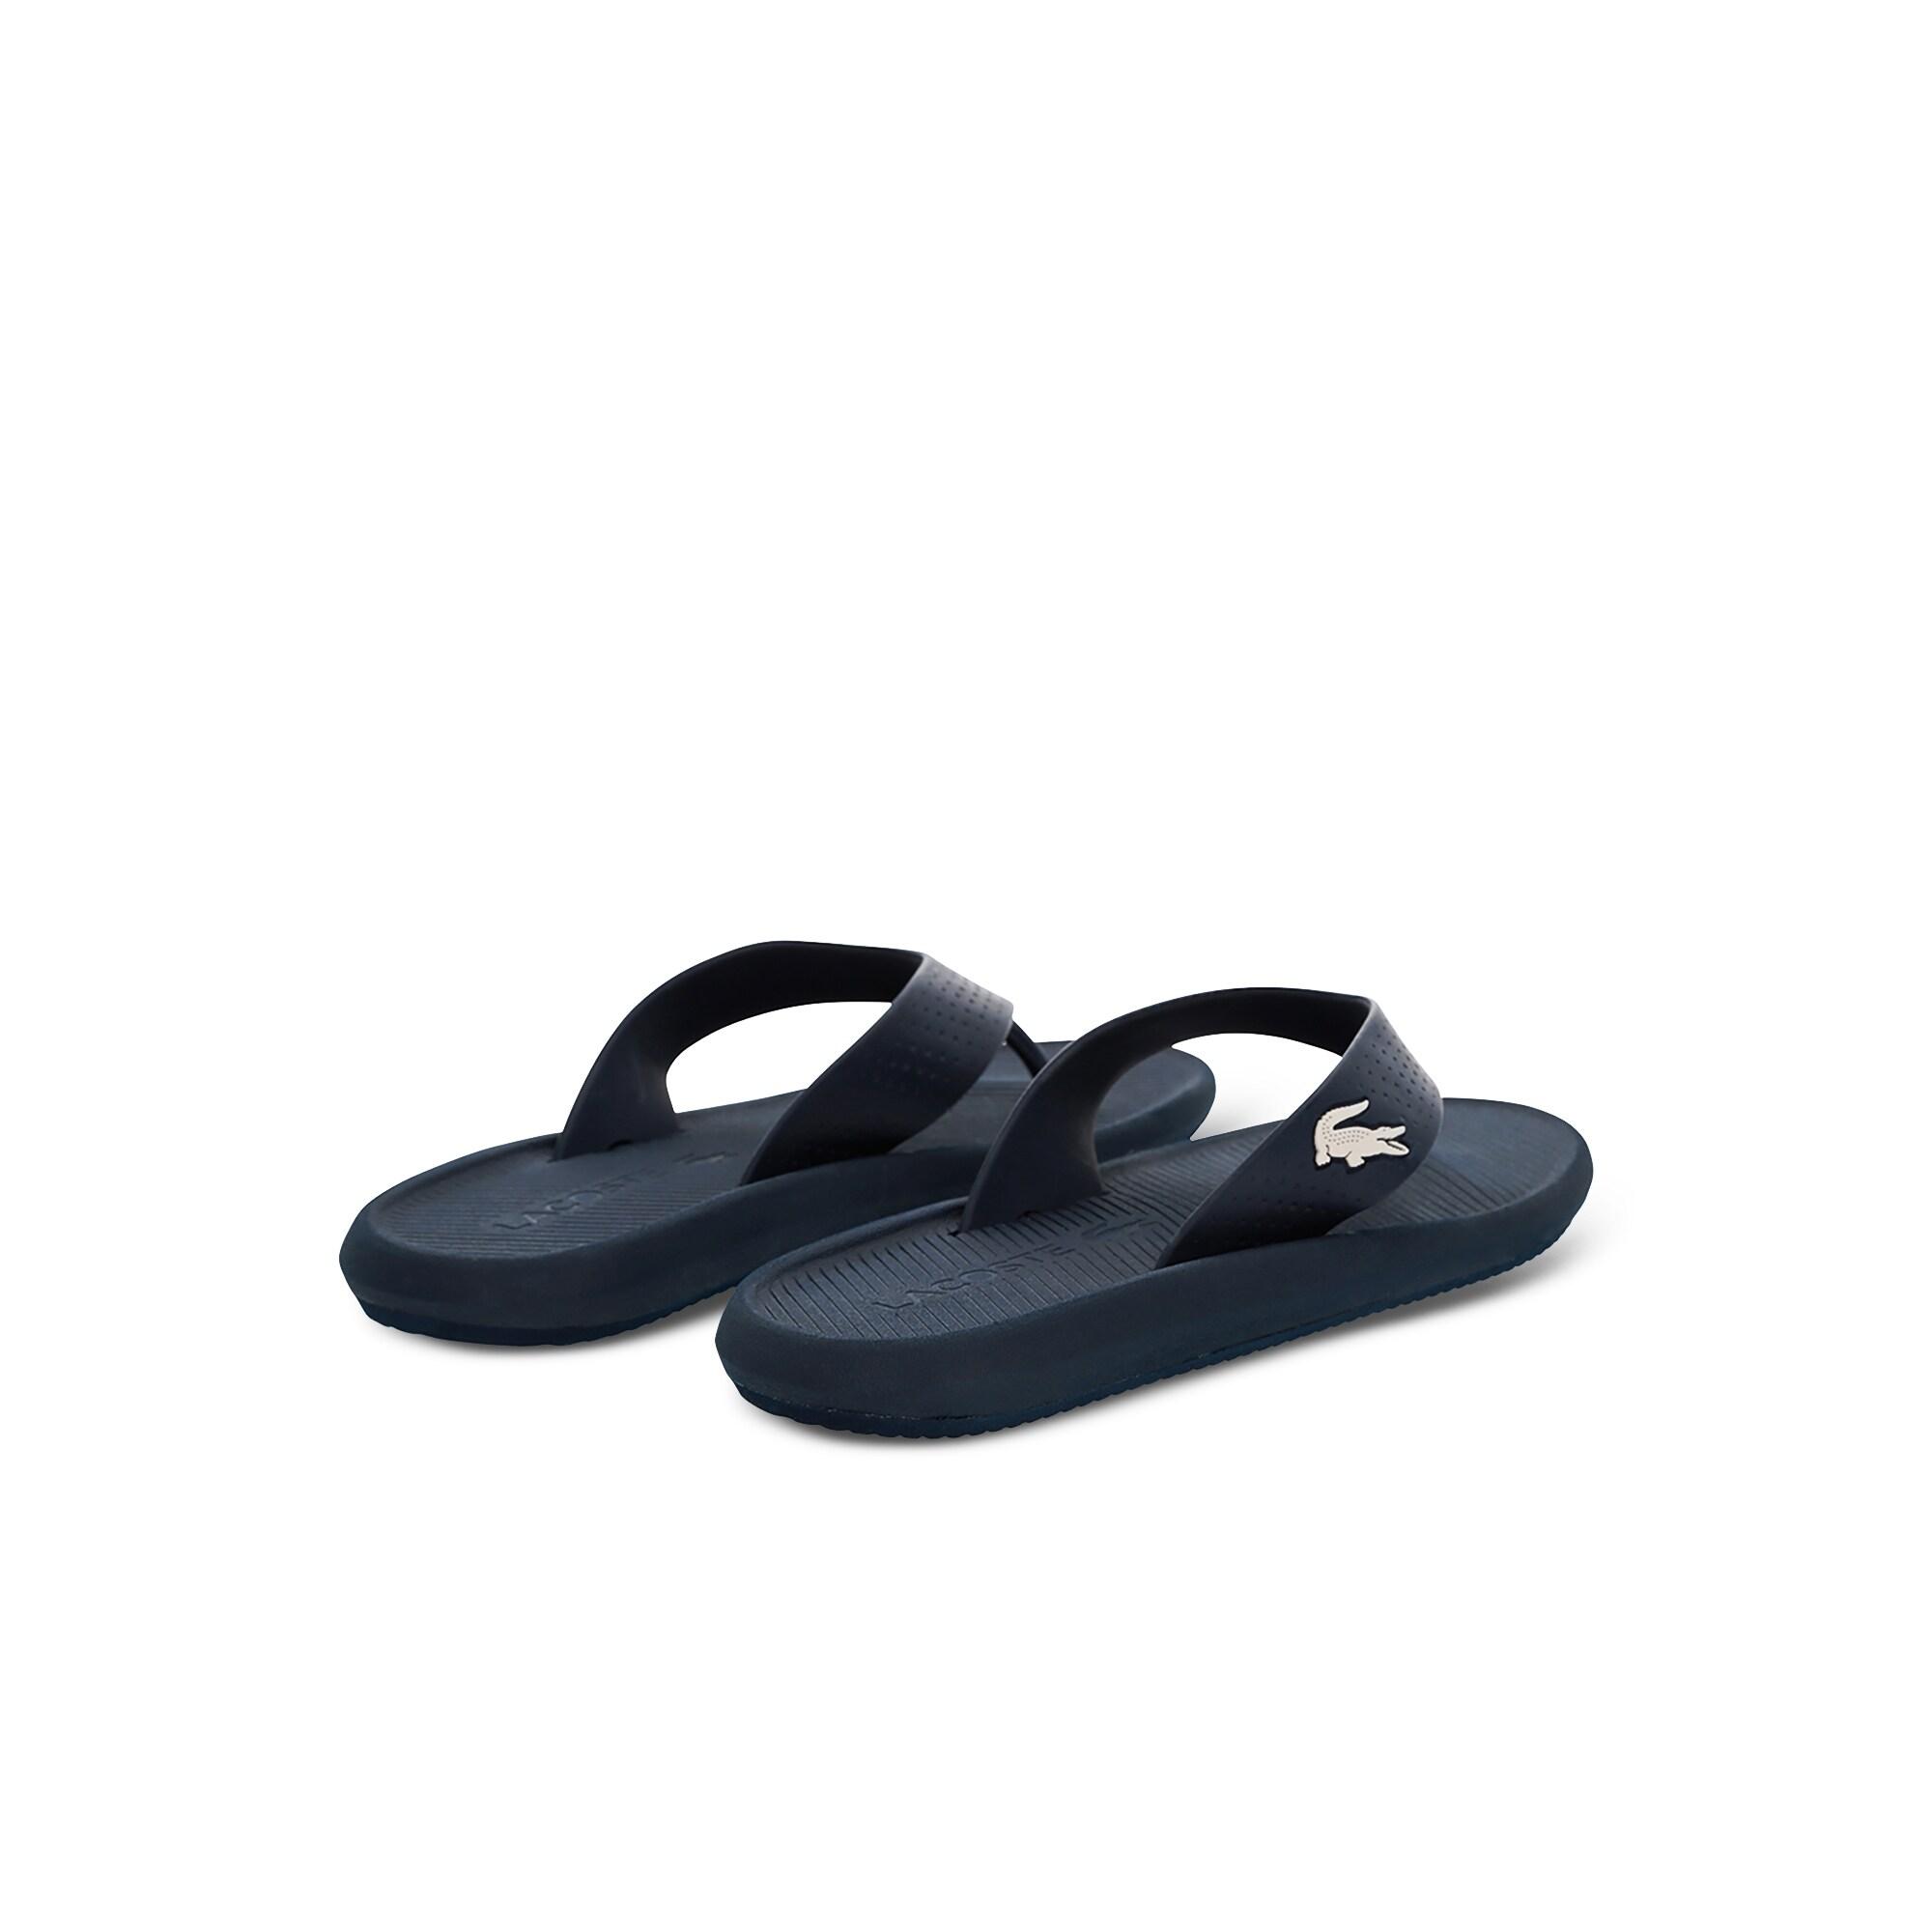 Lacoste Croco Sandal 219 1 Cma Erkek Lacivert - Beyaz Terlik. 4